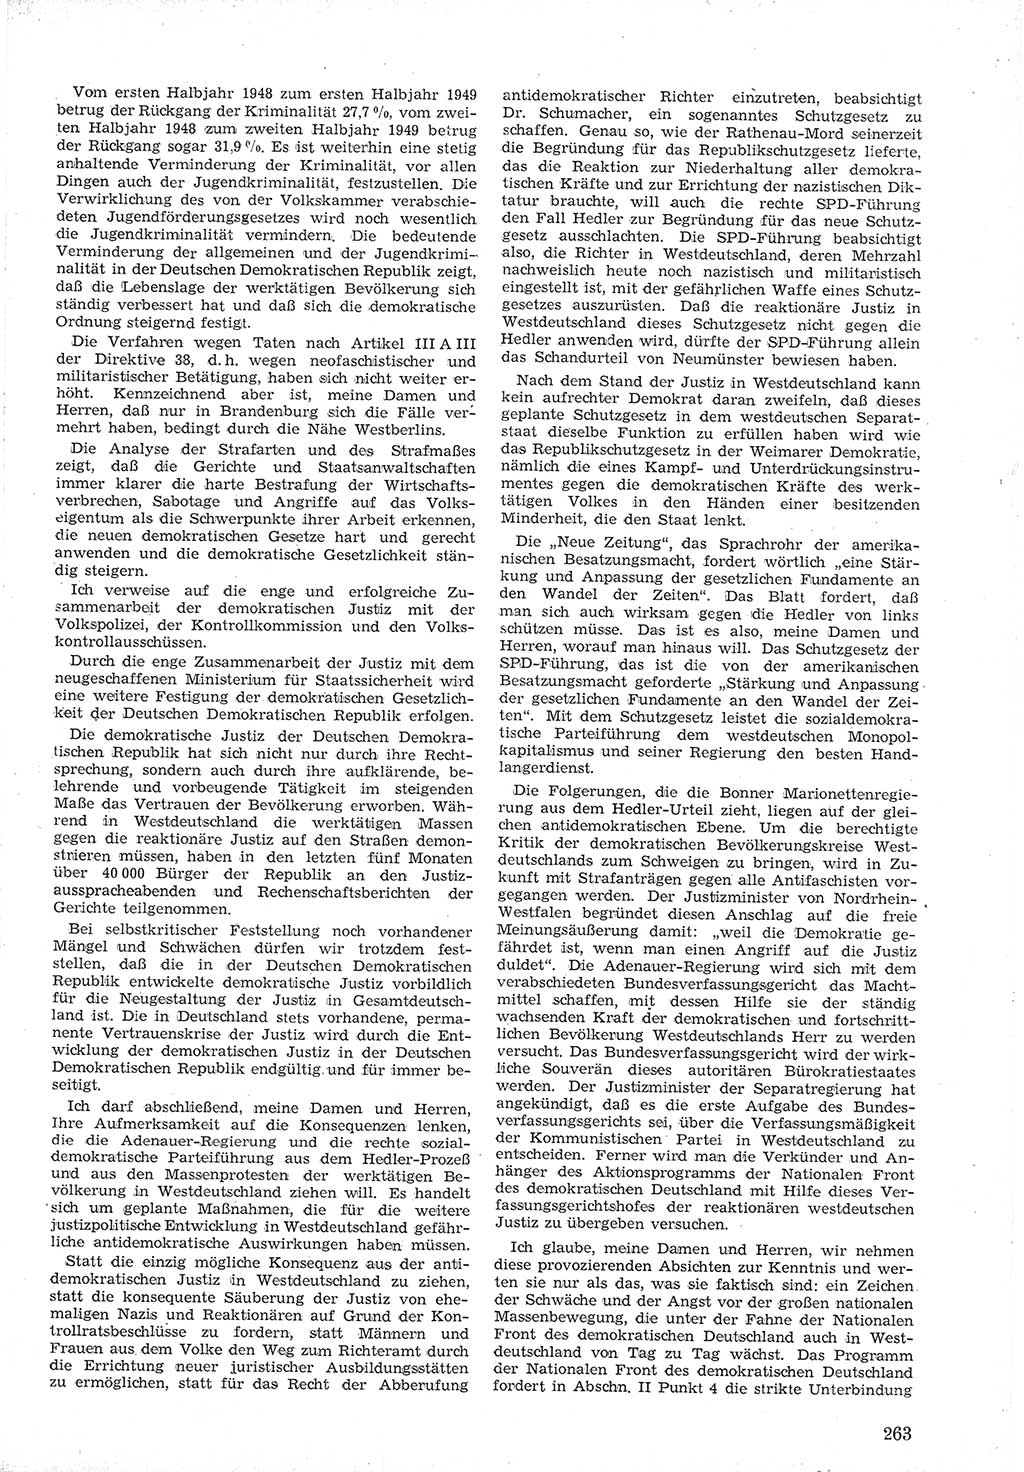 Provisorische Volkskammer (VK) der Deutschen Demokratischen Republik (DDR) 1949-1950, Dokument 277 (Prov. VK DDR 1949-1950, Dok. 277)